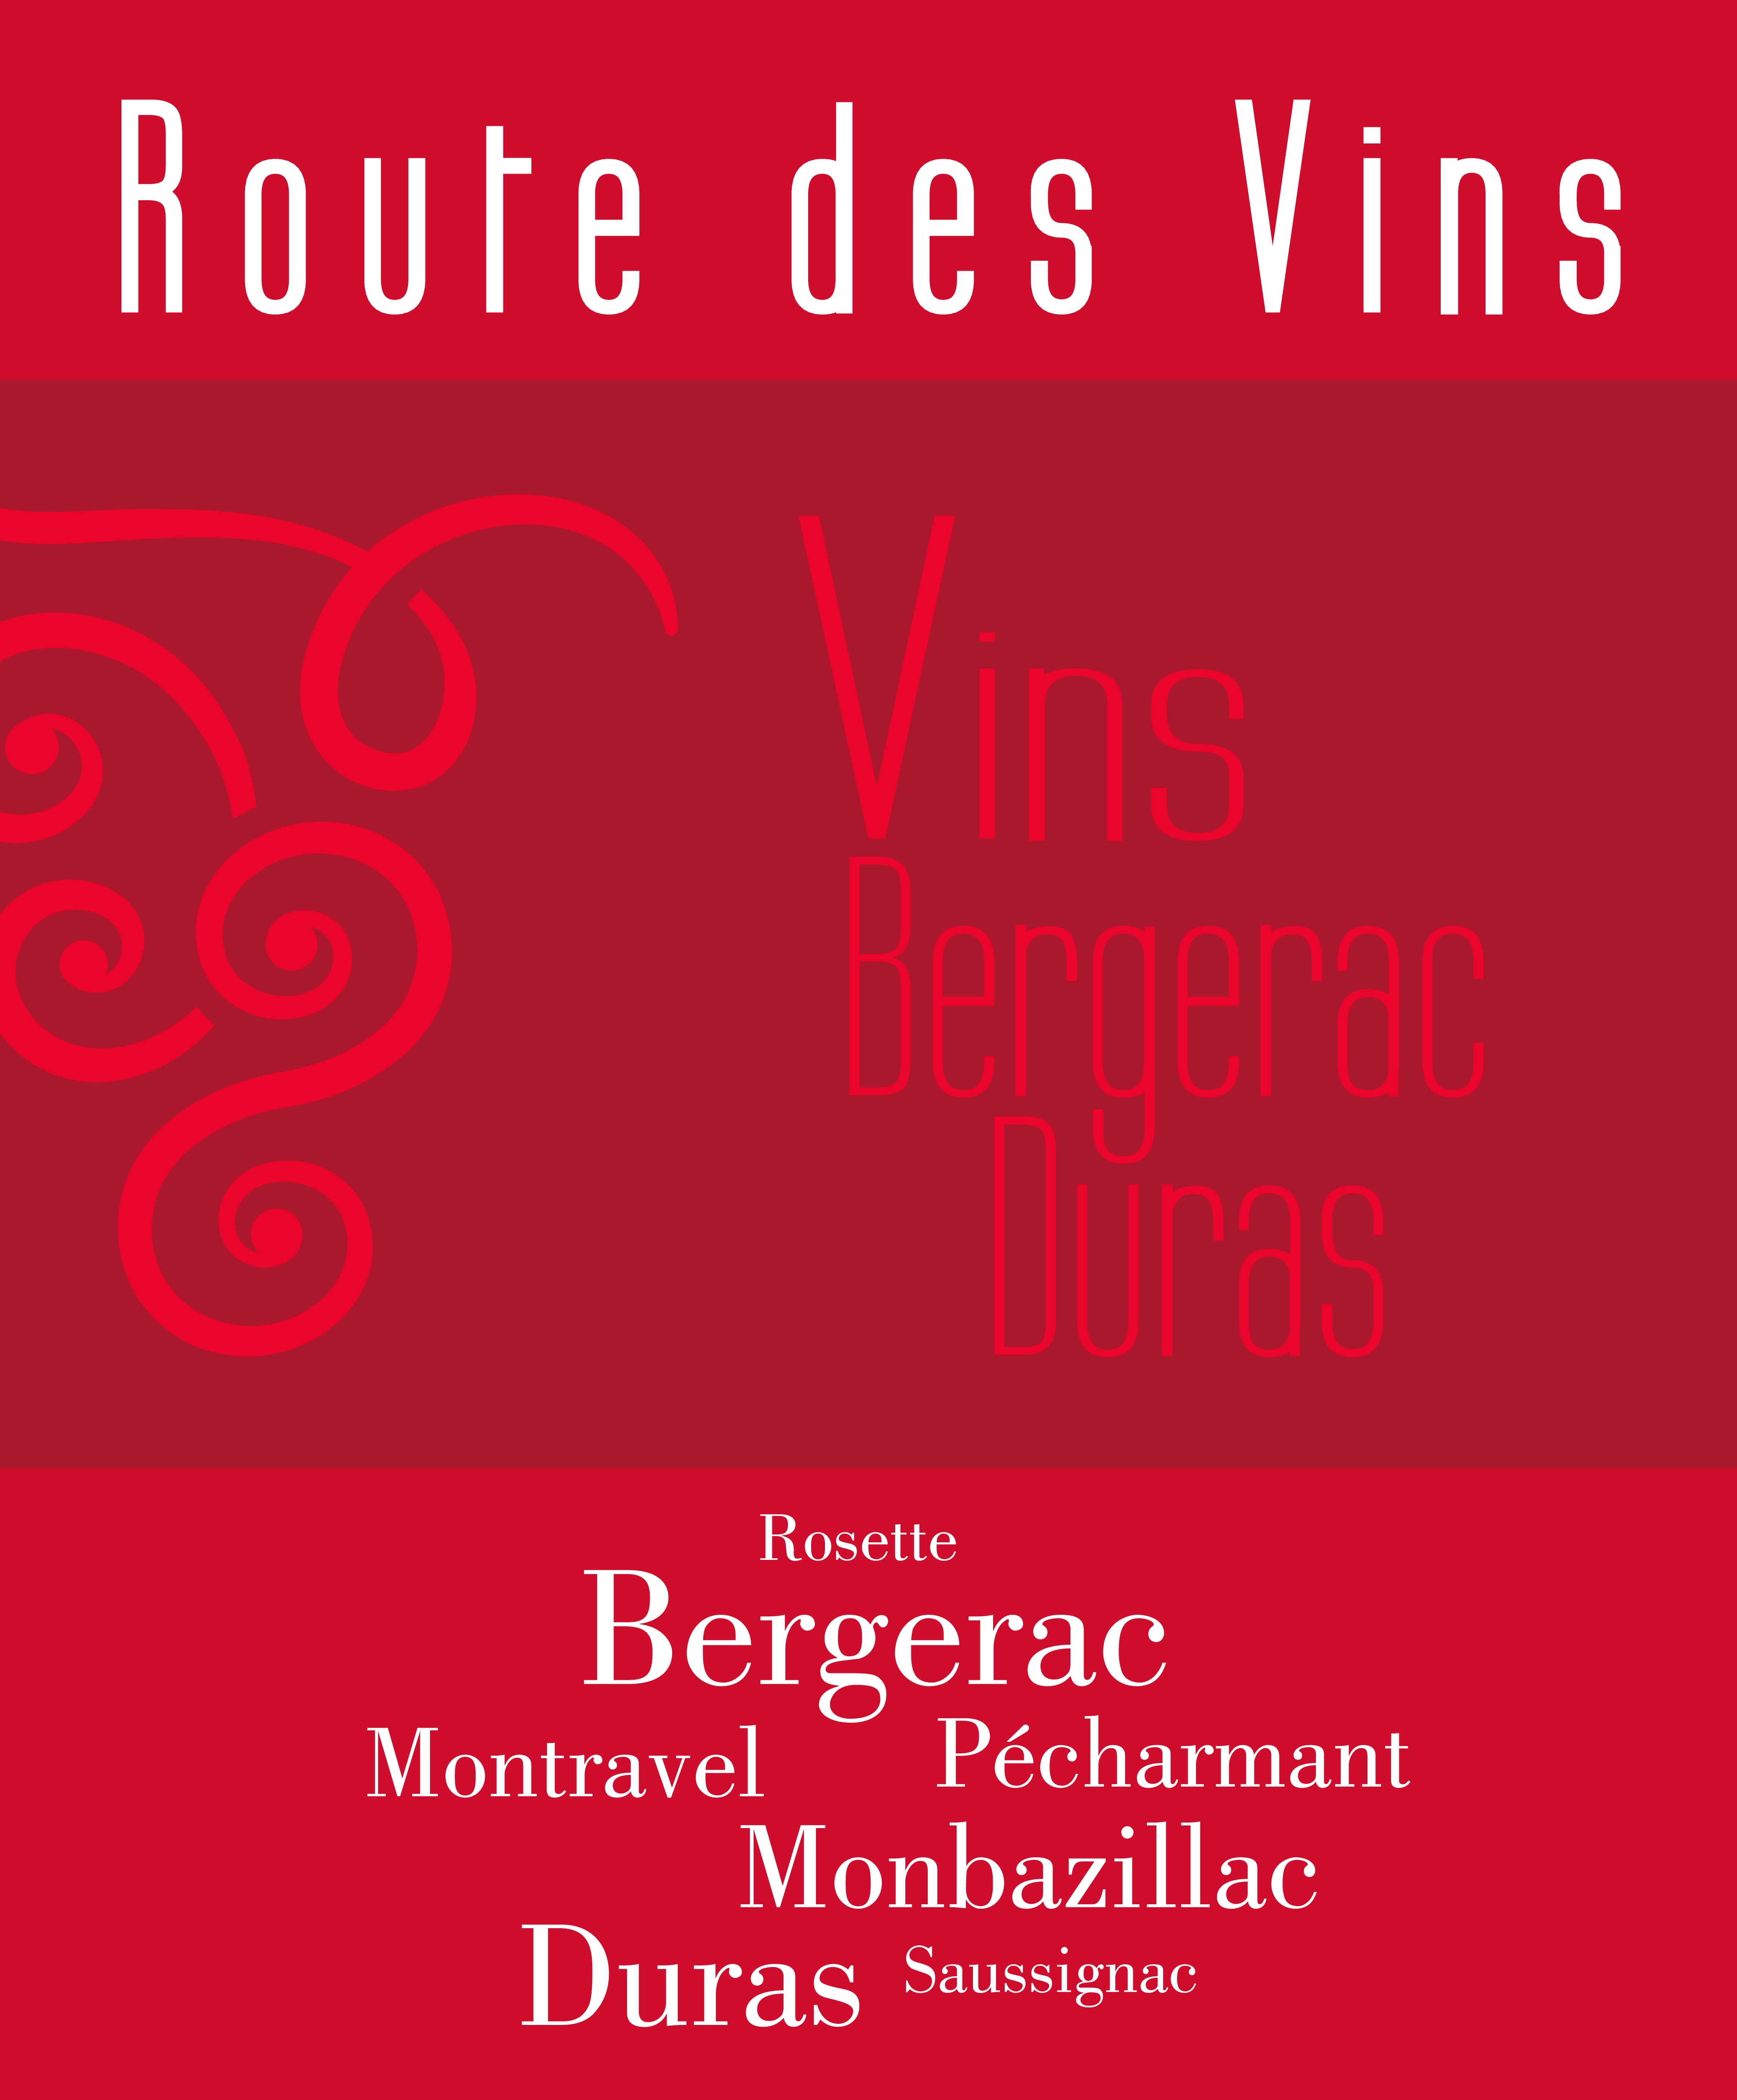 Route des Vins Bergerac Duras